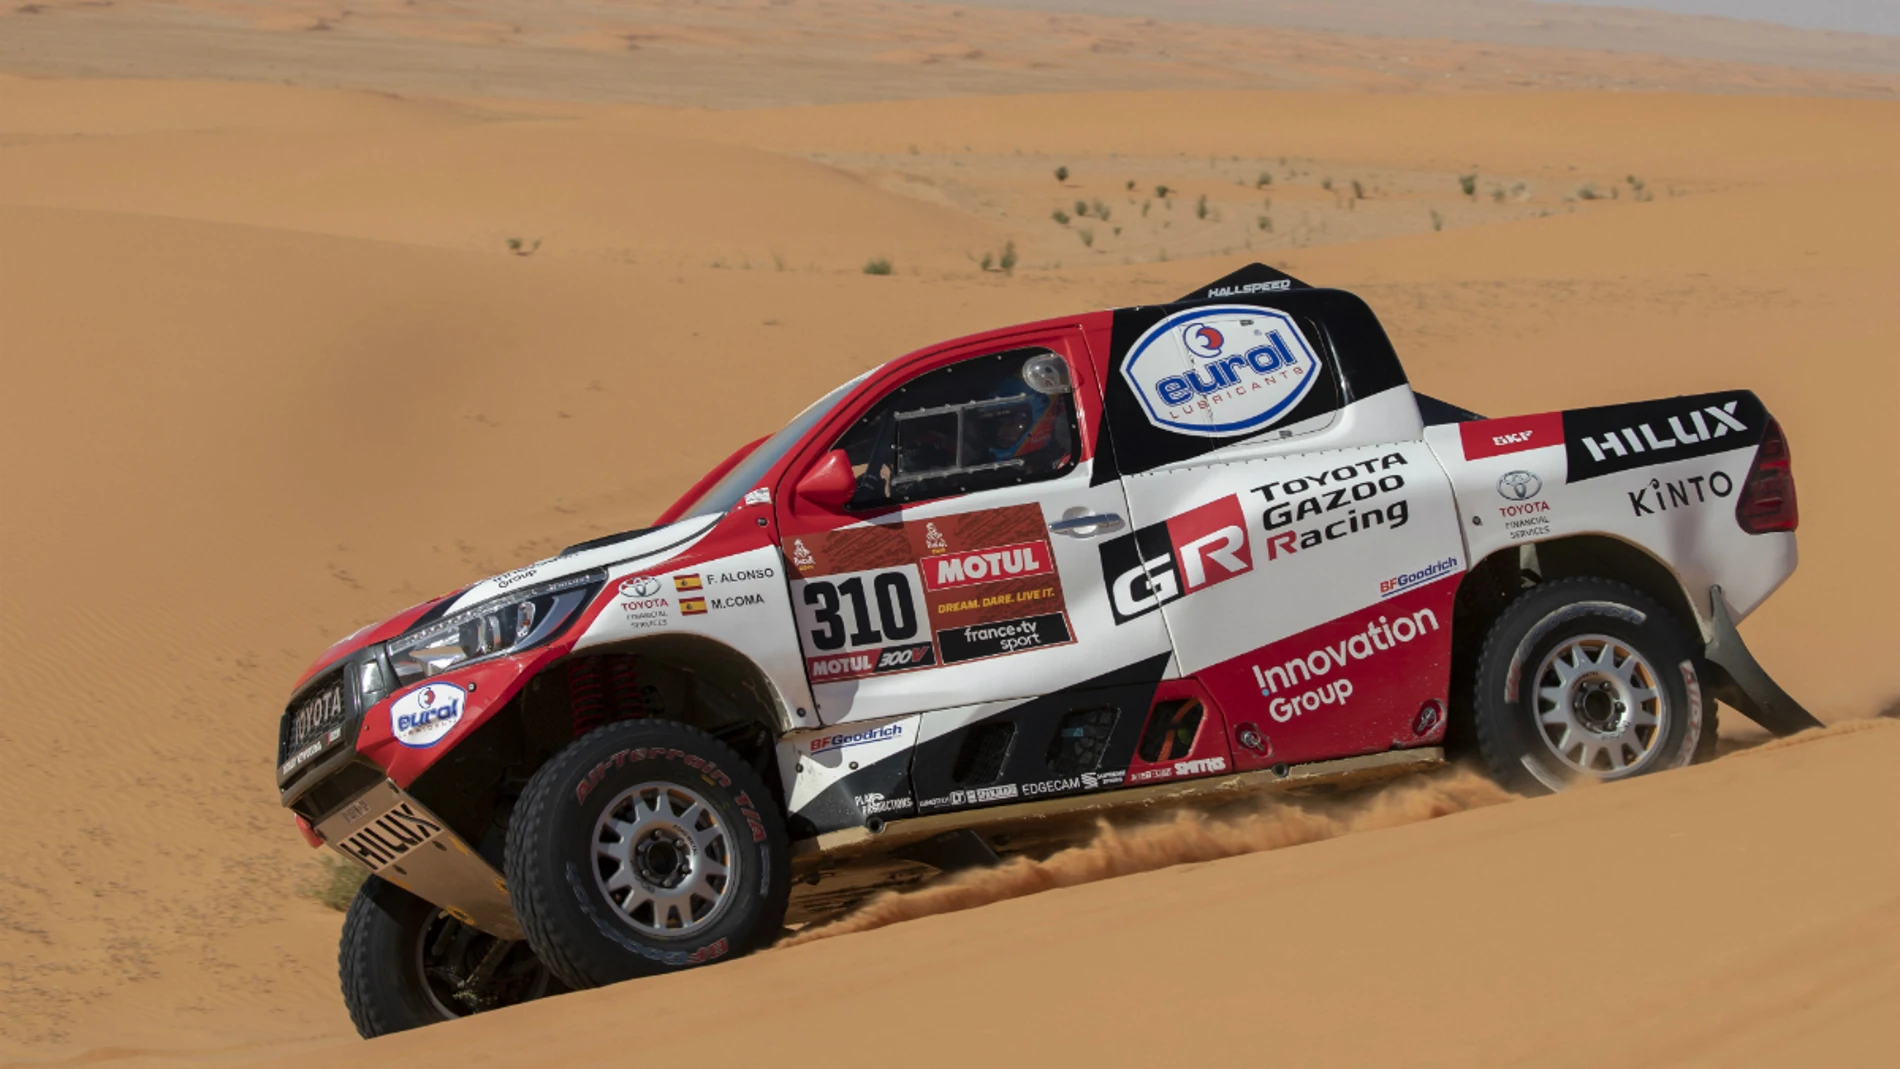 Etapa 8 Rally Dakar 2020: Recorrido de la etapa de hoy lunes 13 de enero